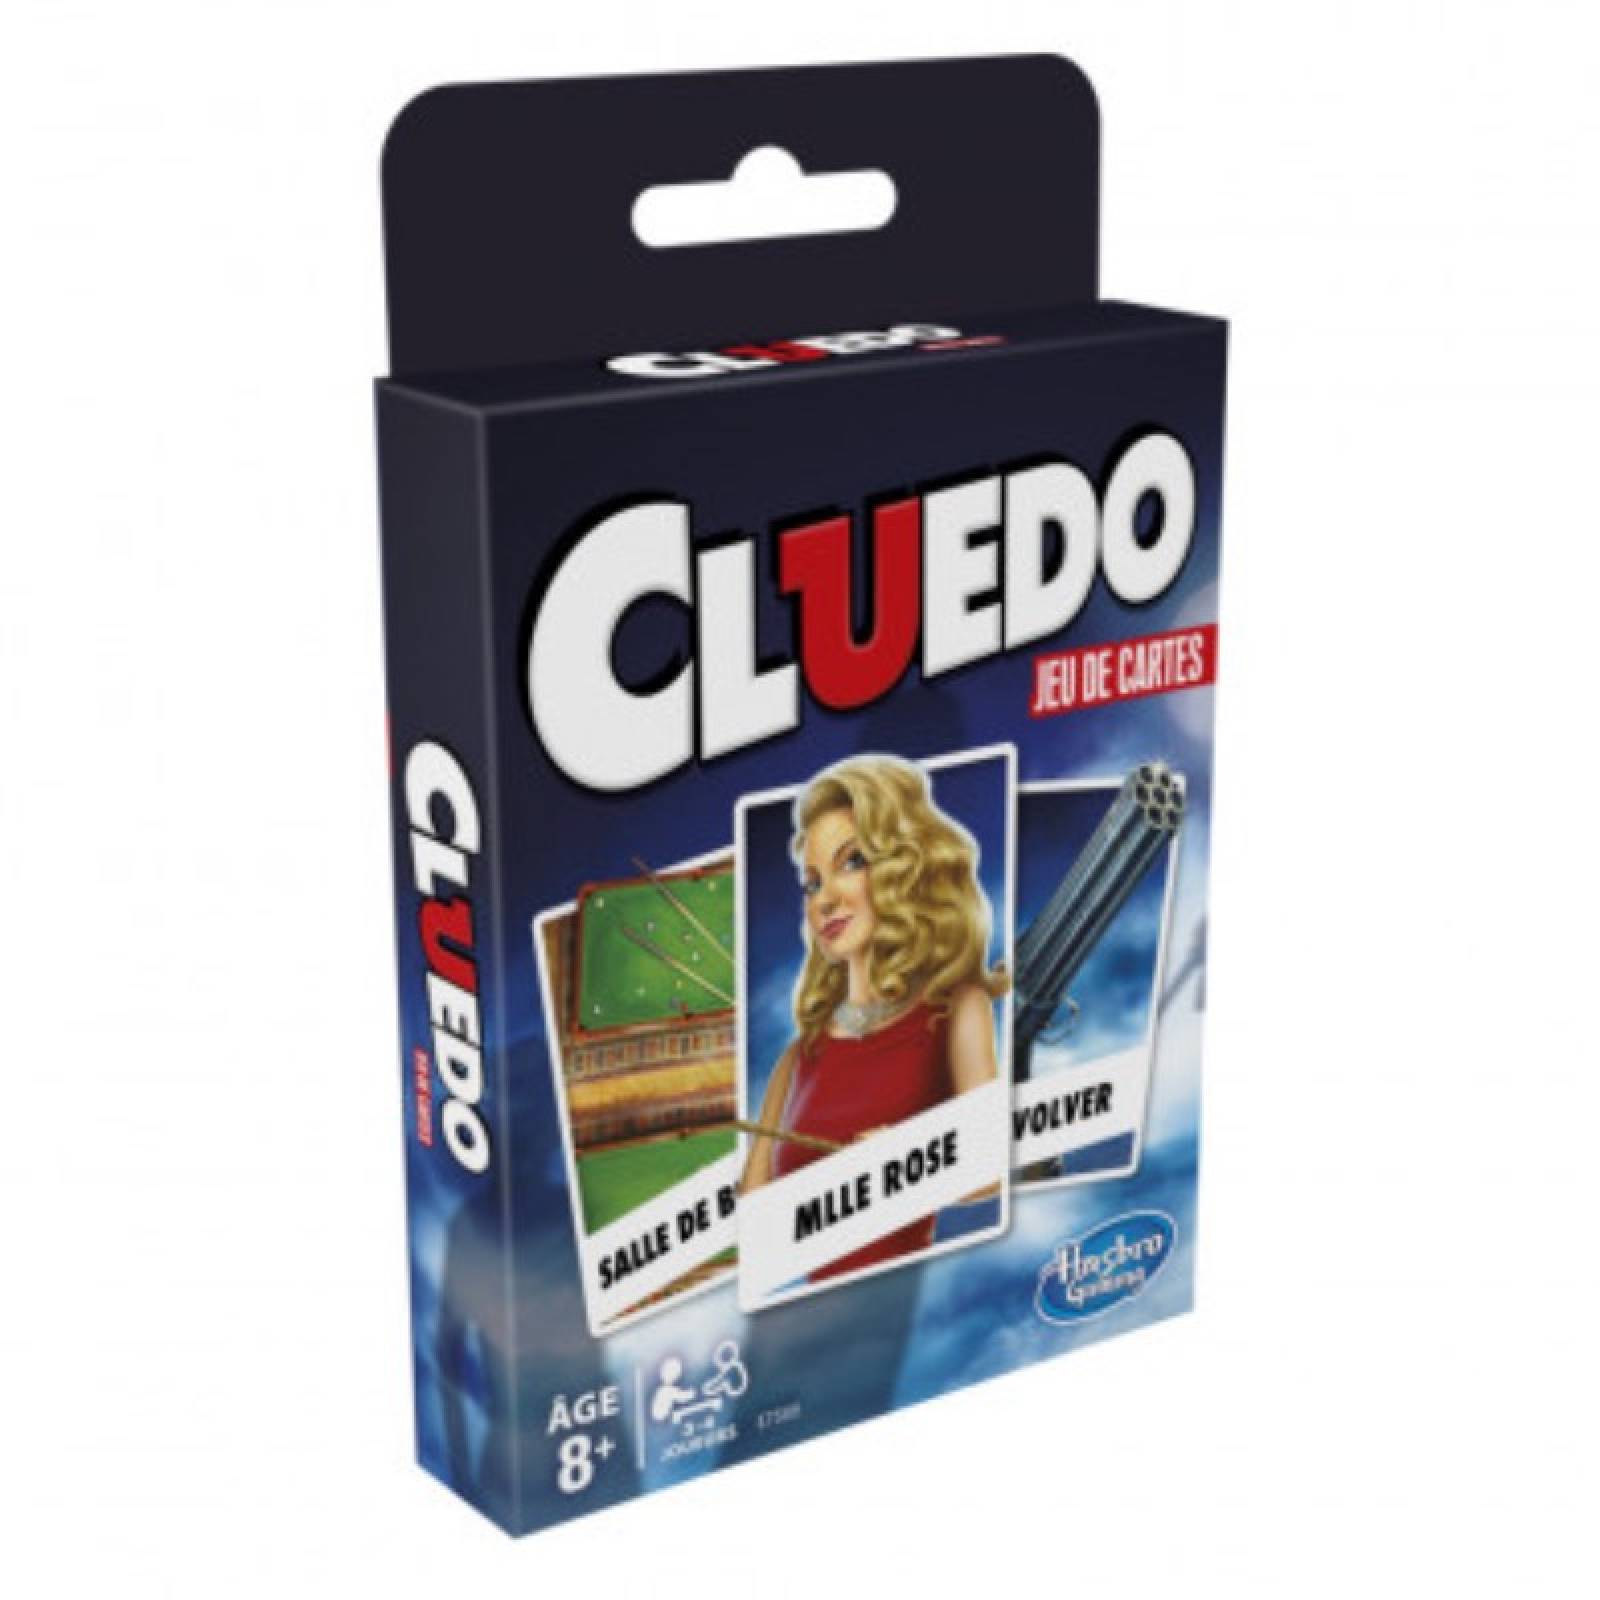 Cluedo Card Game 8+